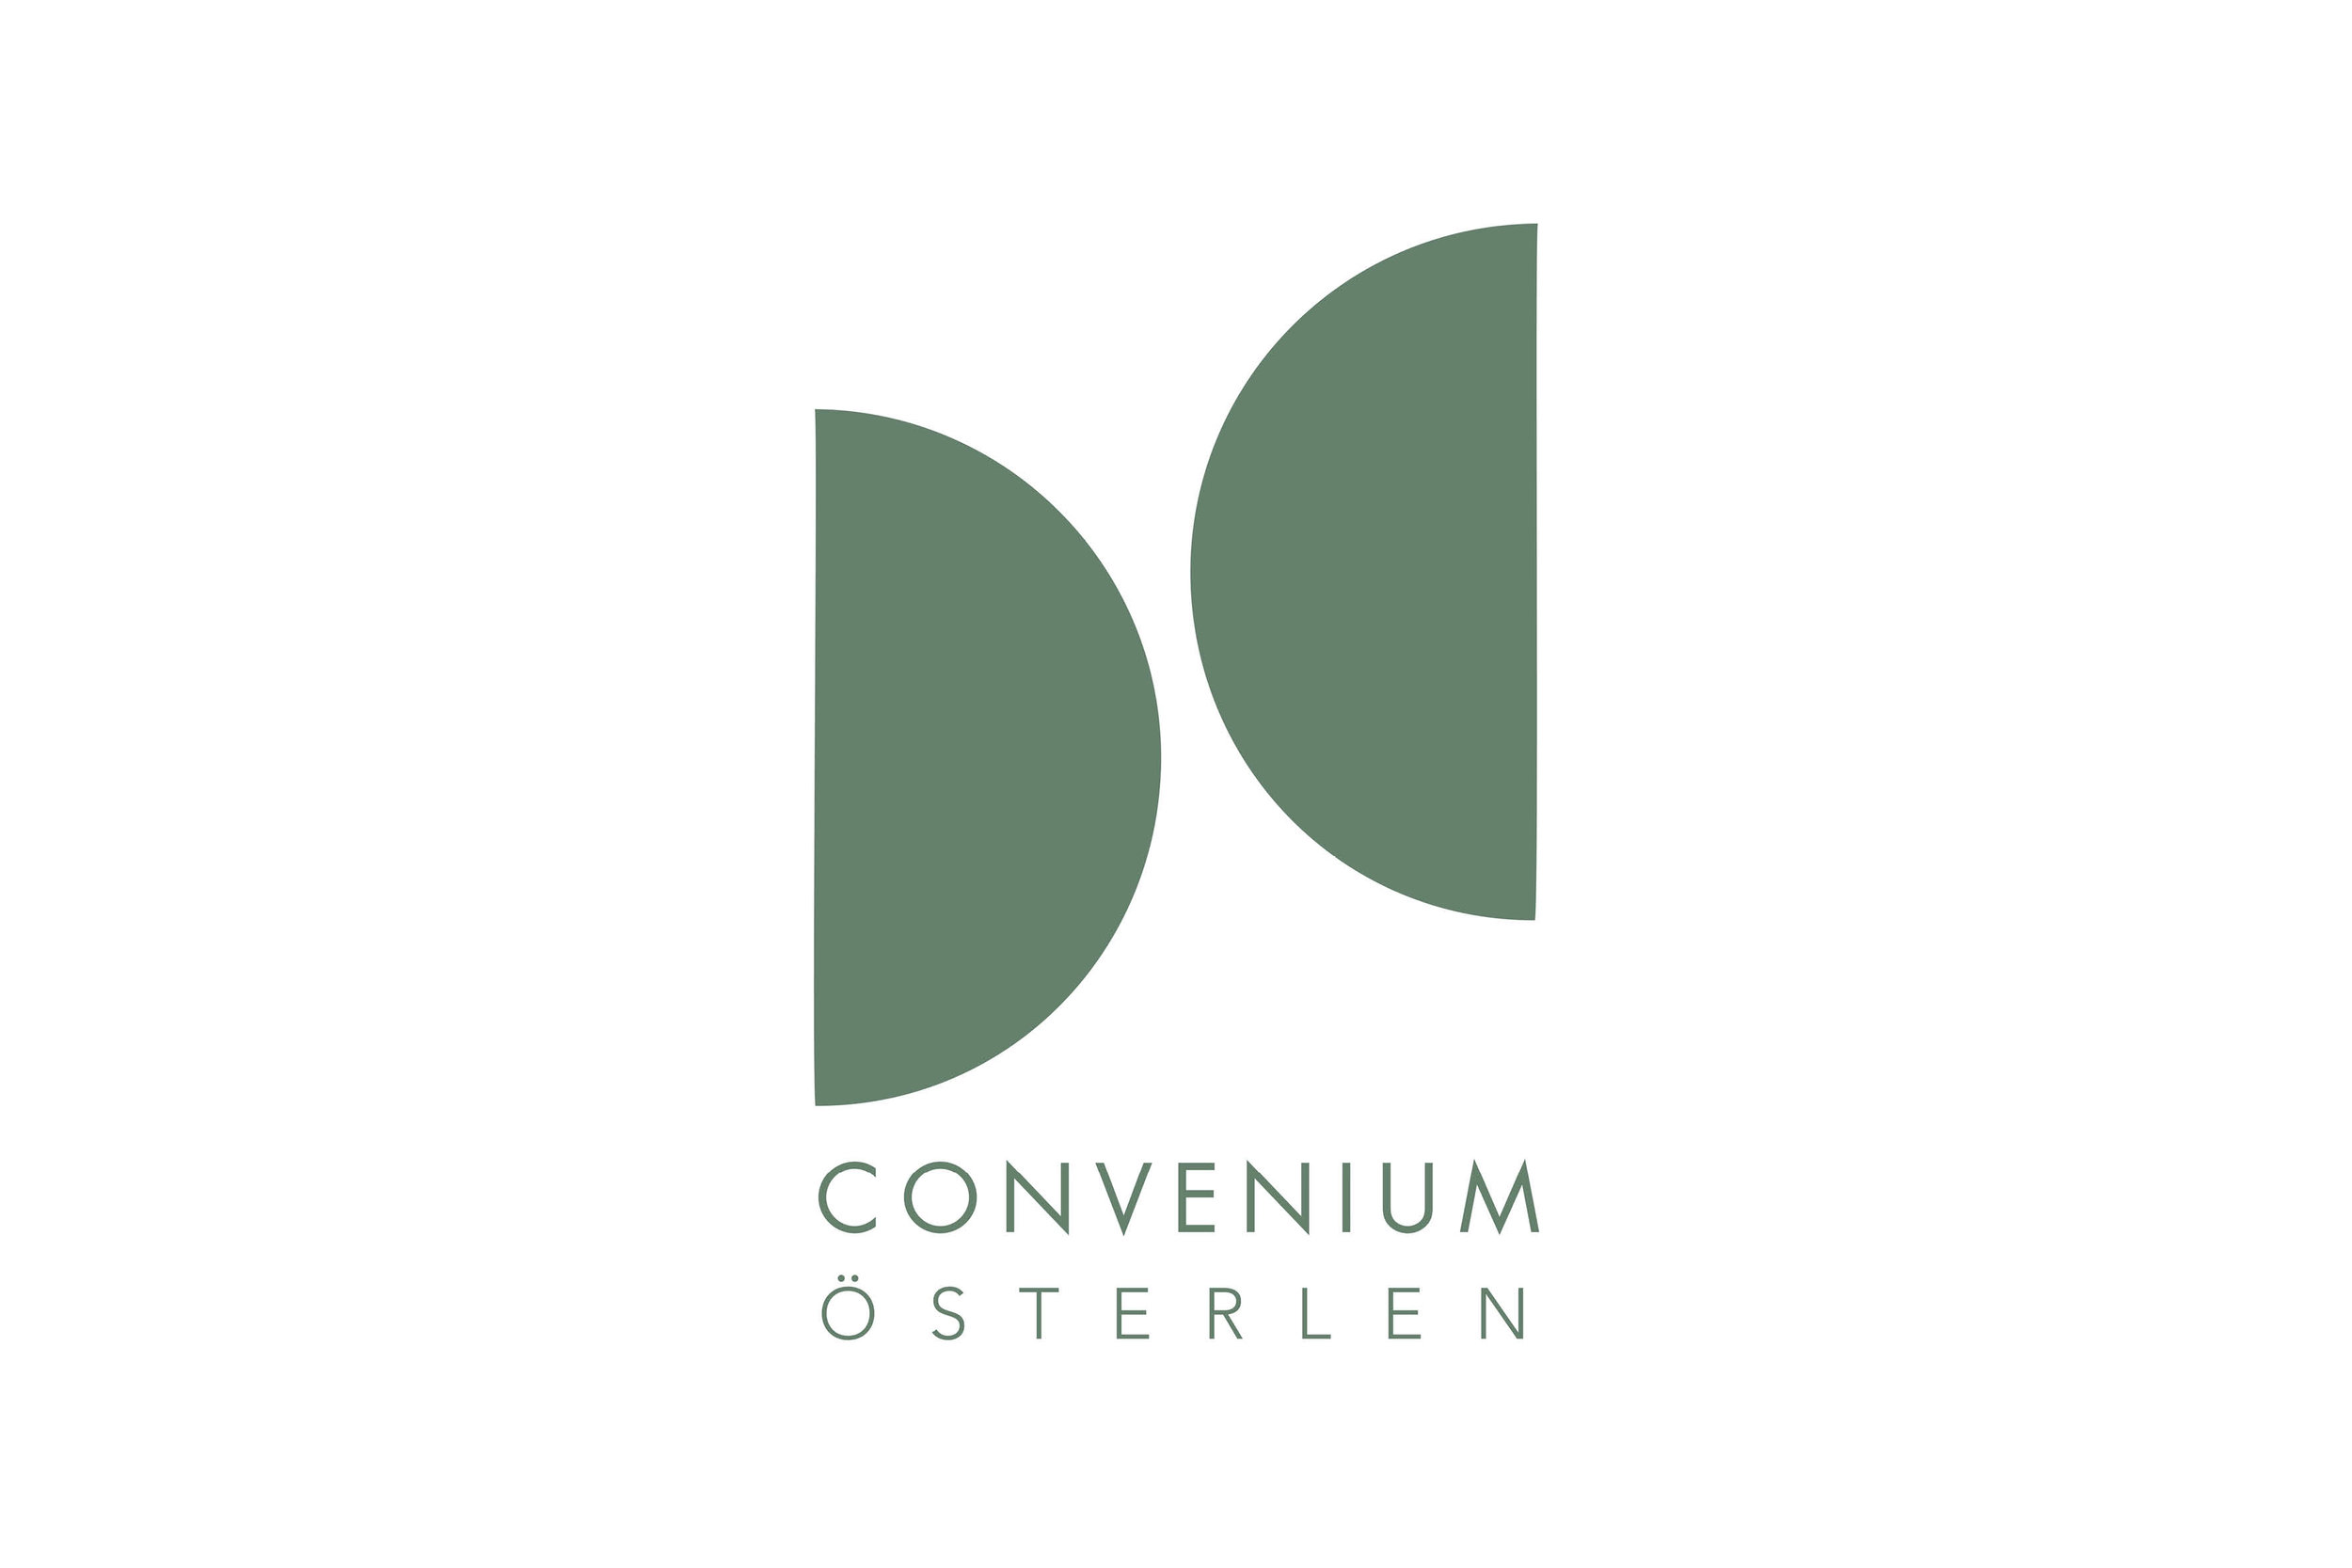  Convenium är en ideell förening vars ambition är att skapa ett forum på Österlen för att ge människor möjlighet att sätta de existentiella livsfrågorna i centrum. 